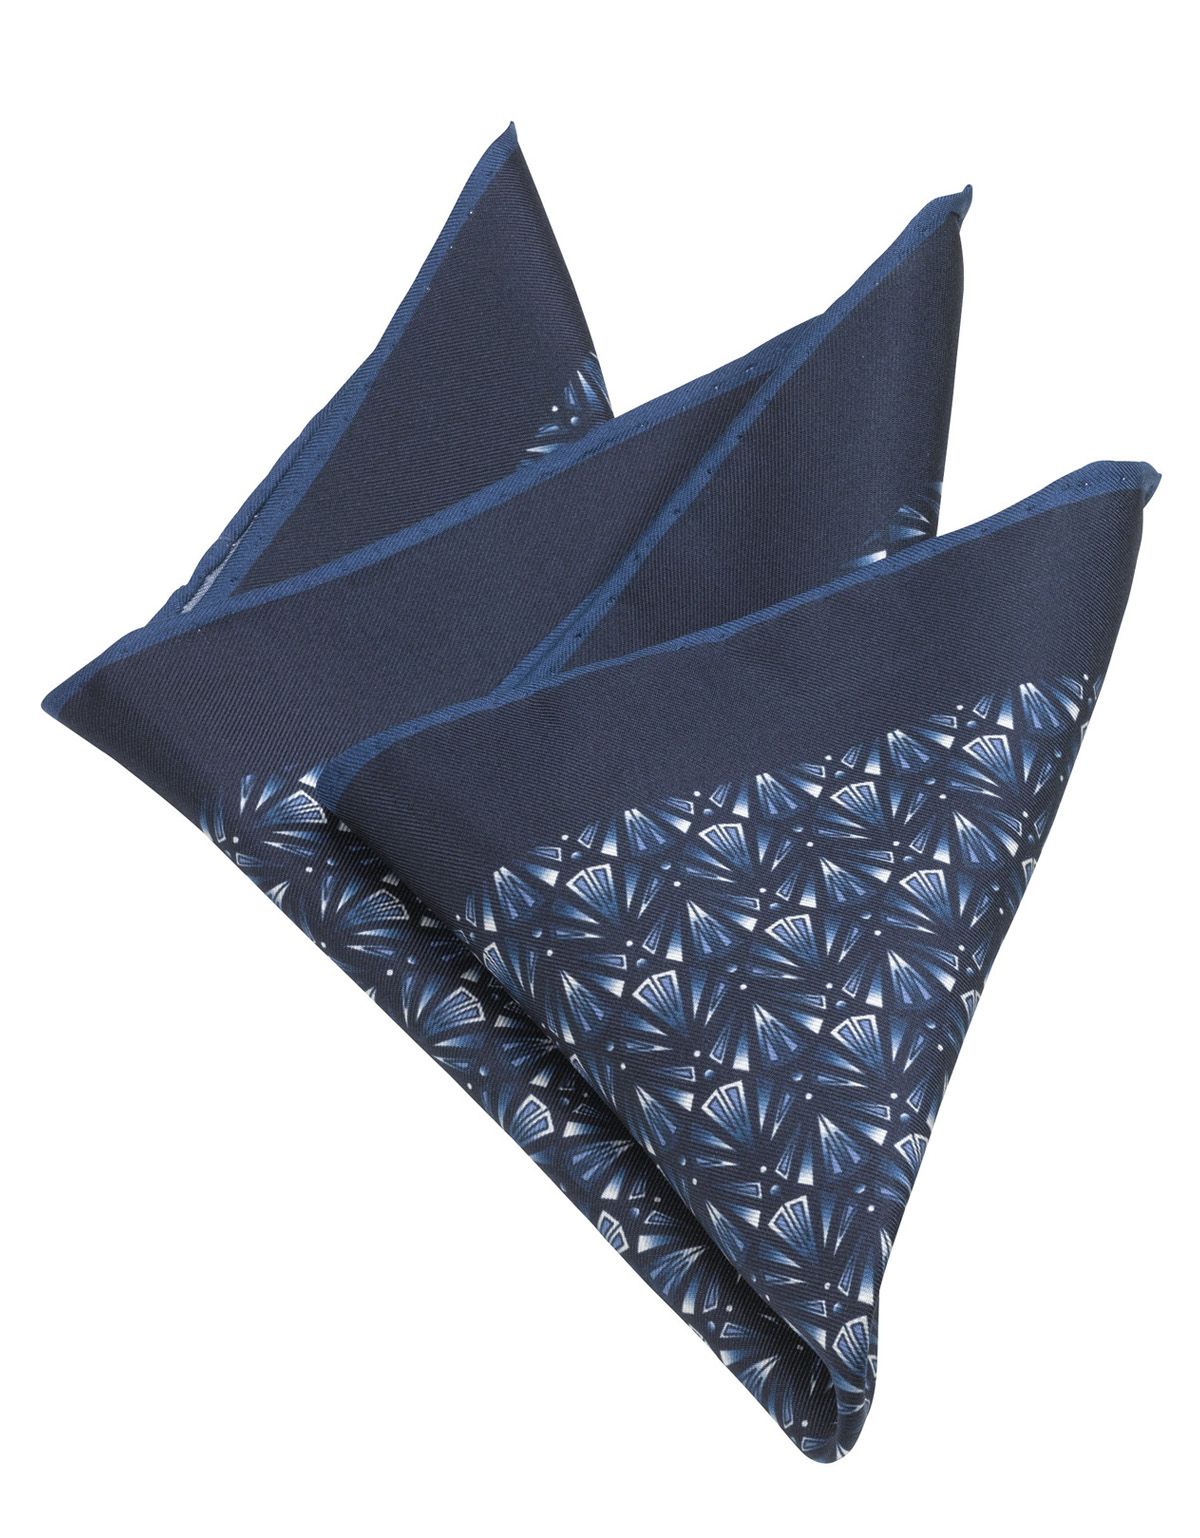 Шелковый платок-паше с синим орнаментом[СИНИЙ]